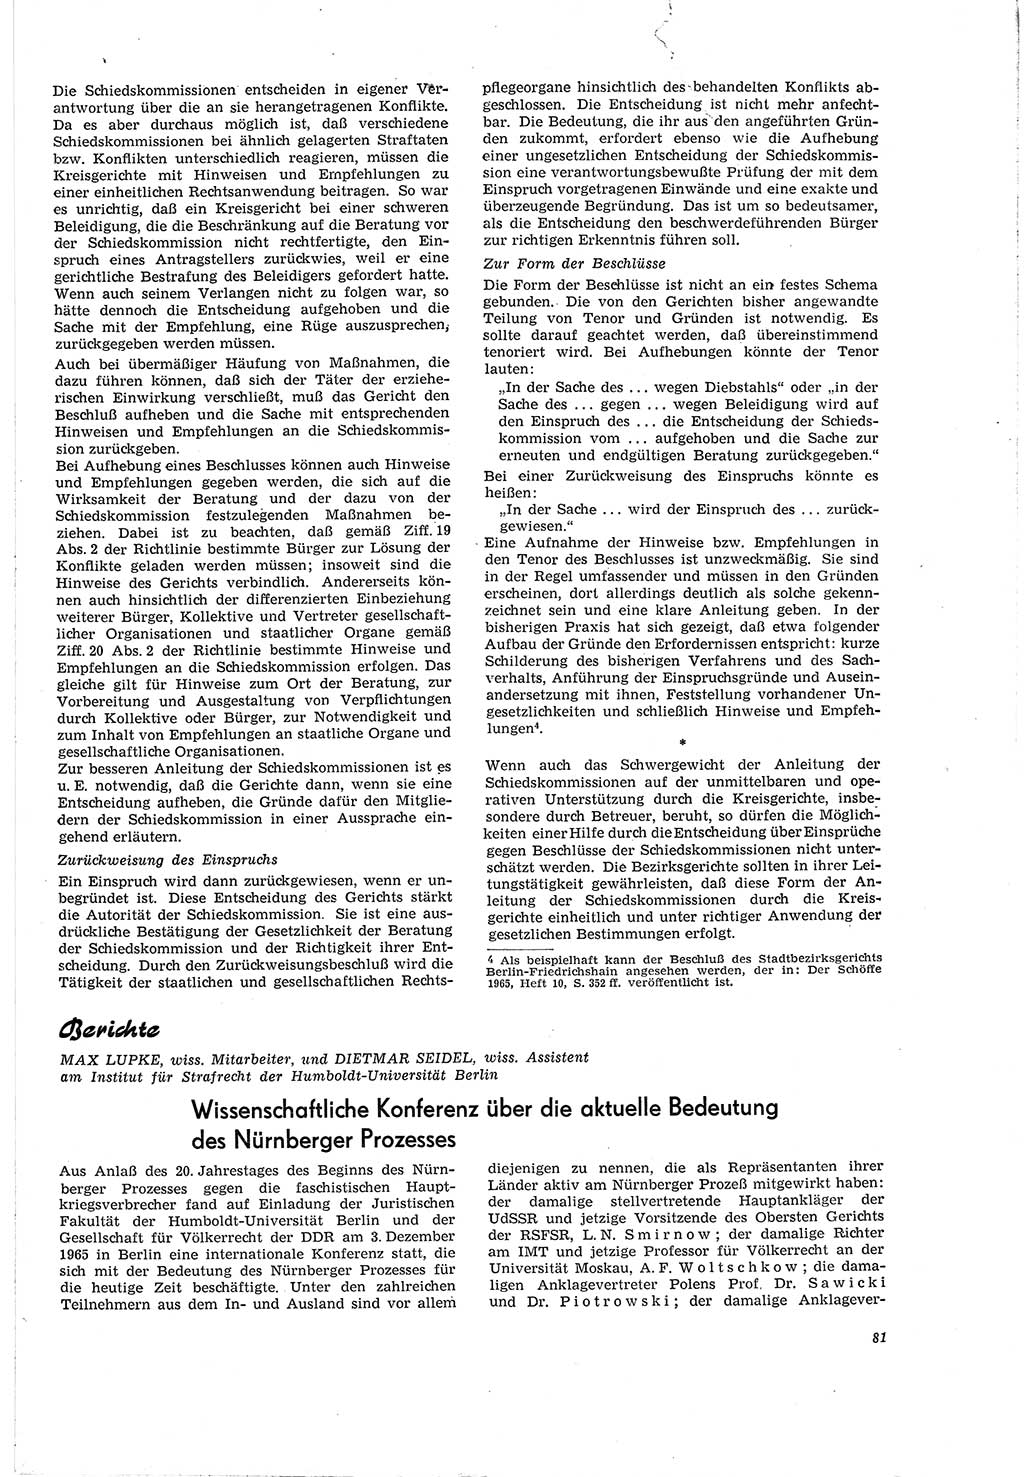 Neue Justiz (NJ), Zeitschrift für Recht und Rechtswissenschaft [Deutsche Demokratische Republik (DDR)], 20. Jahrgang 1966, Seite 81 (NJ DDR 1966, S. 81)